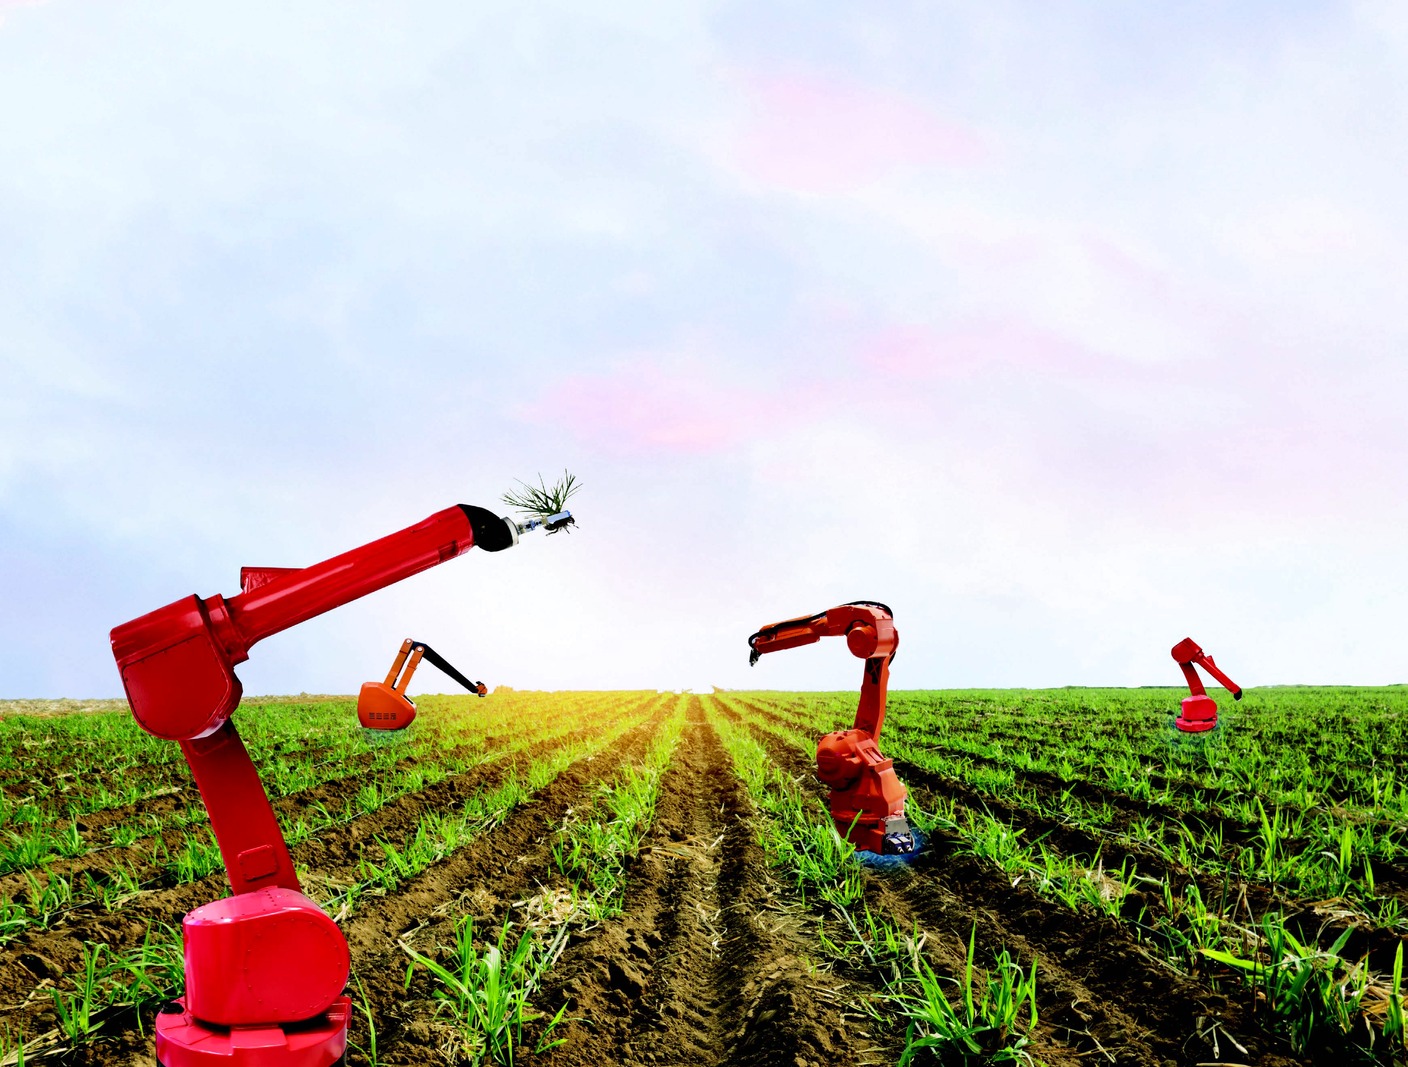 تتميز الزراعة الذكية باستخدام التكنولوجيا لتخطيط وإدارة المحاصيل بشكل أفضل (تواصل اجتماعي)